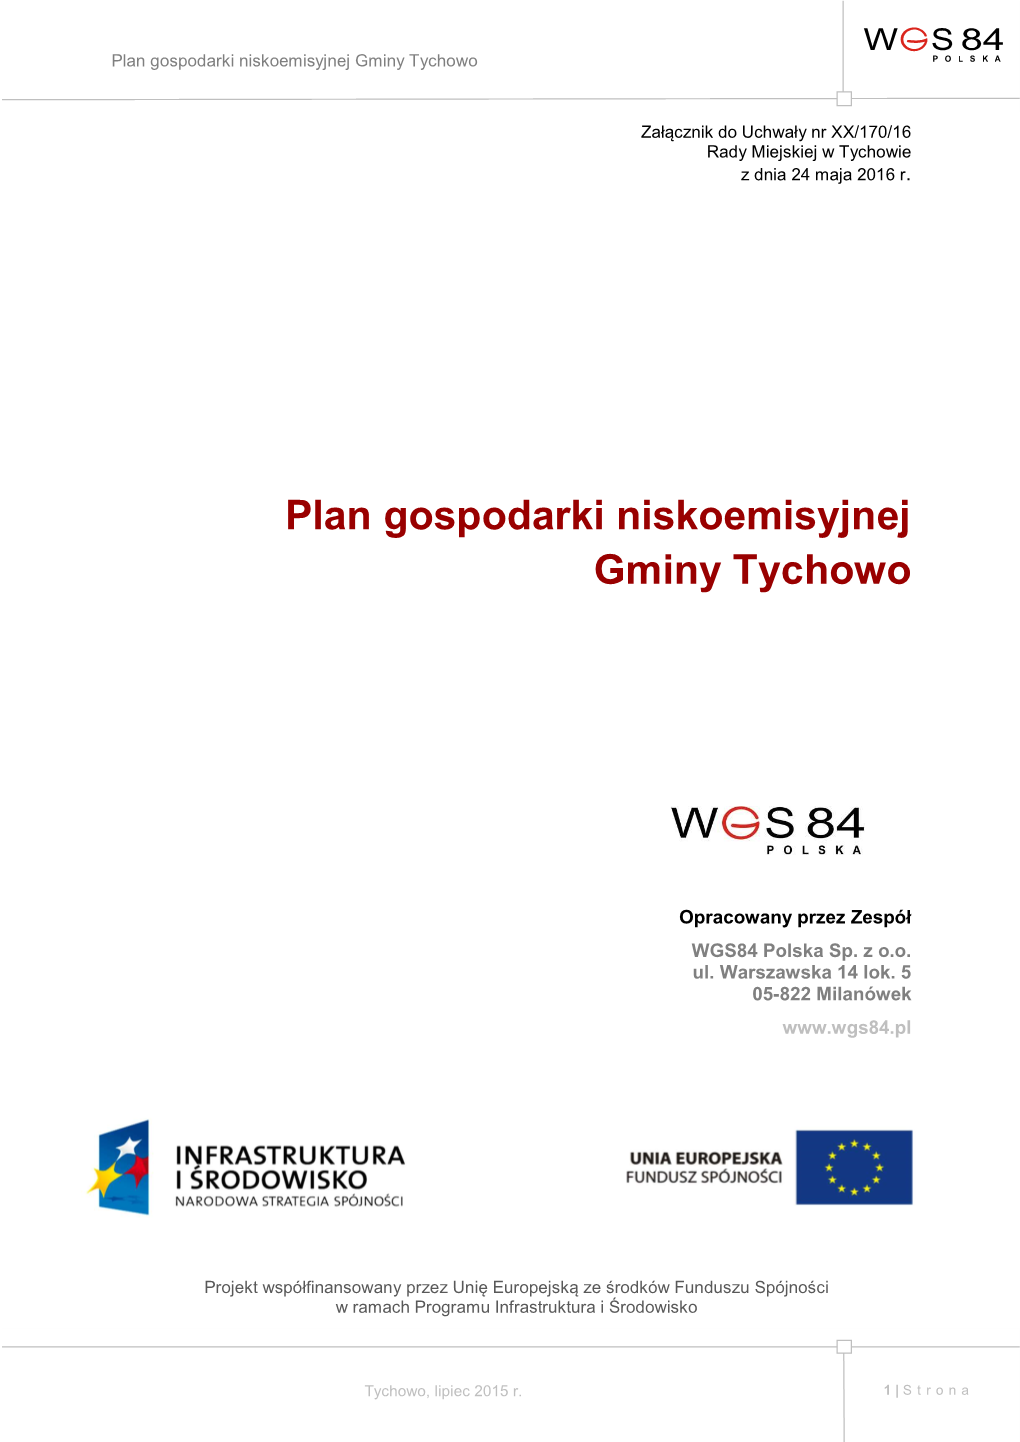 Plan Gospodarki Niskoemisyjnej Gminy Tychowo